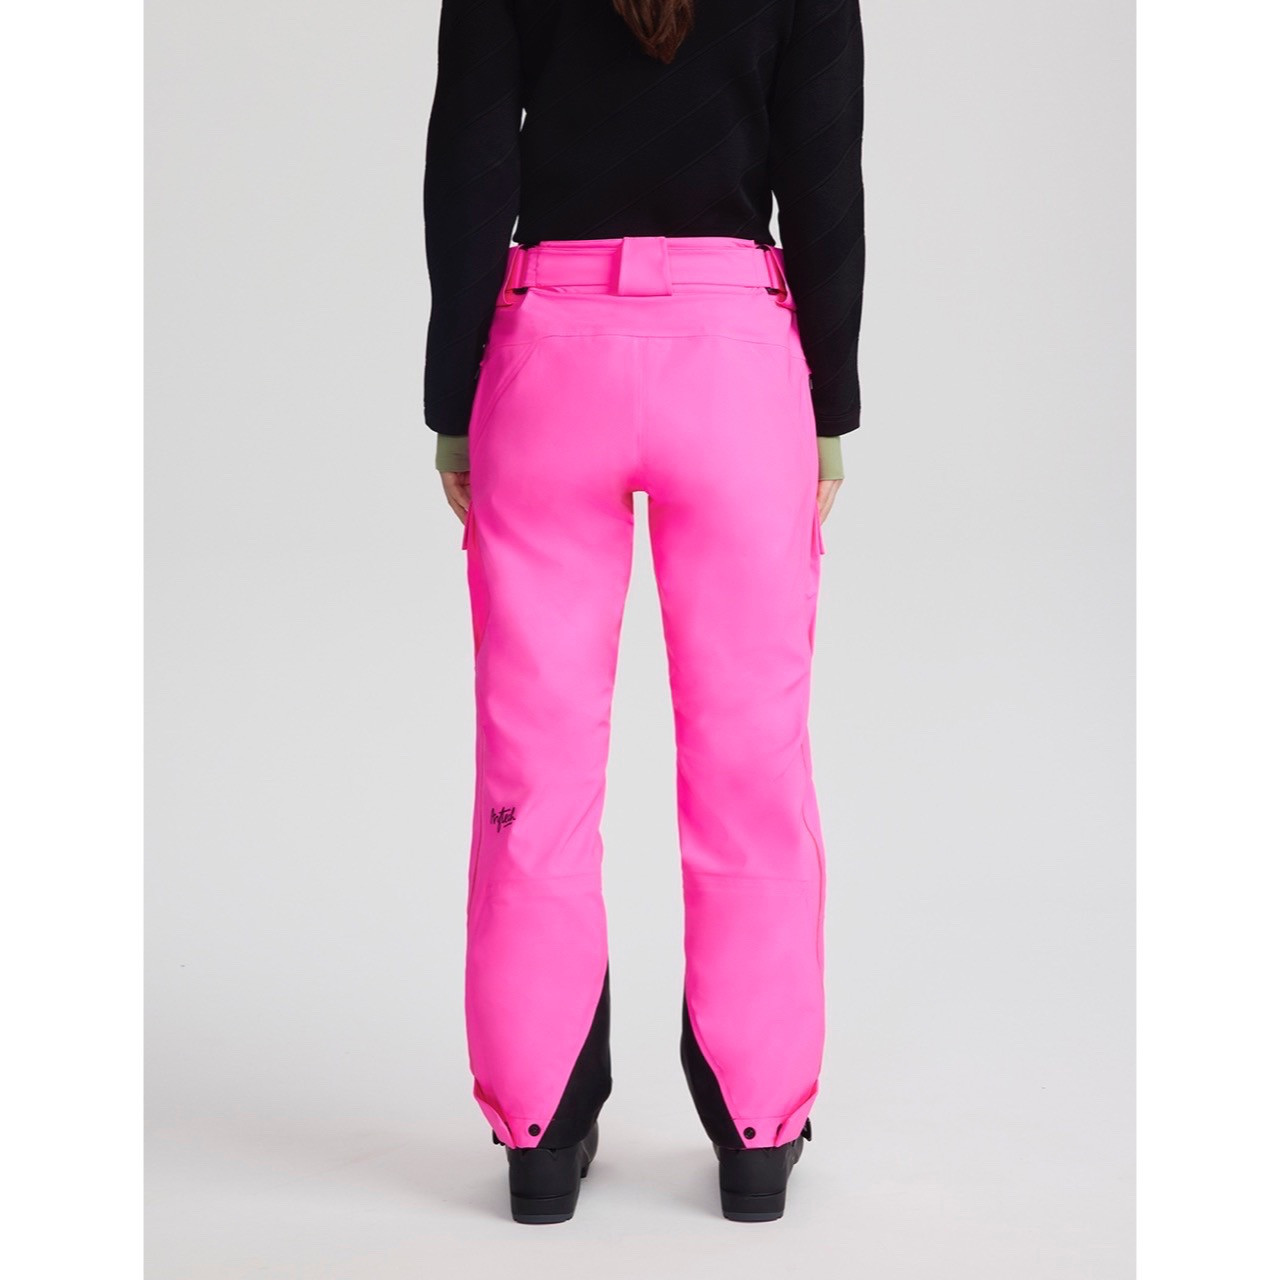 Ski Pants For Women - Polyester - White - Pink - 5 Colors - 3 Sizes -  ApolloBox